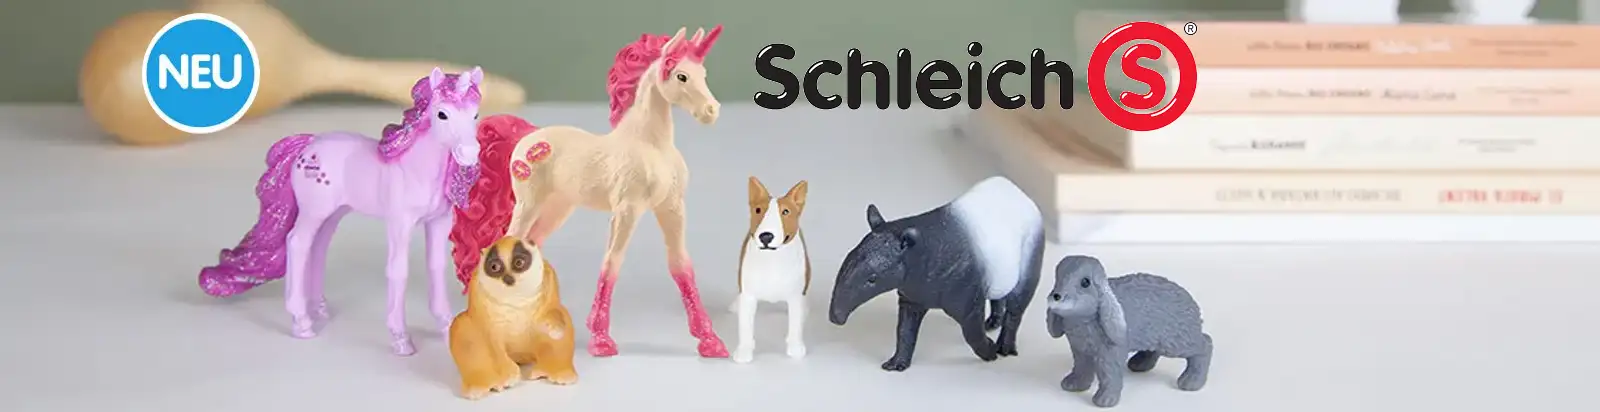 Schleich Neuheiten 2022 bei Spielzeugwelten.de